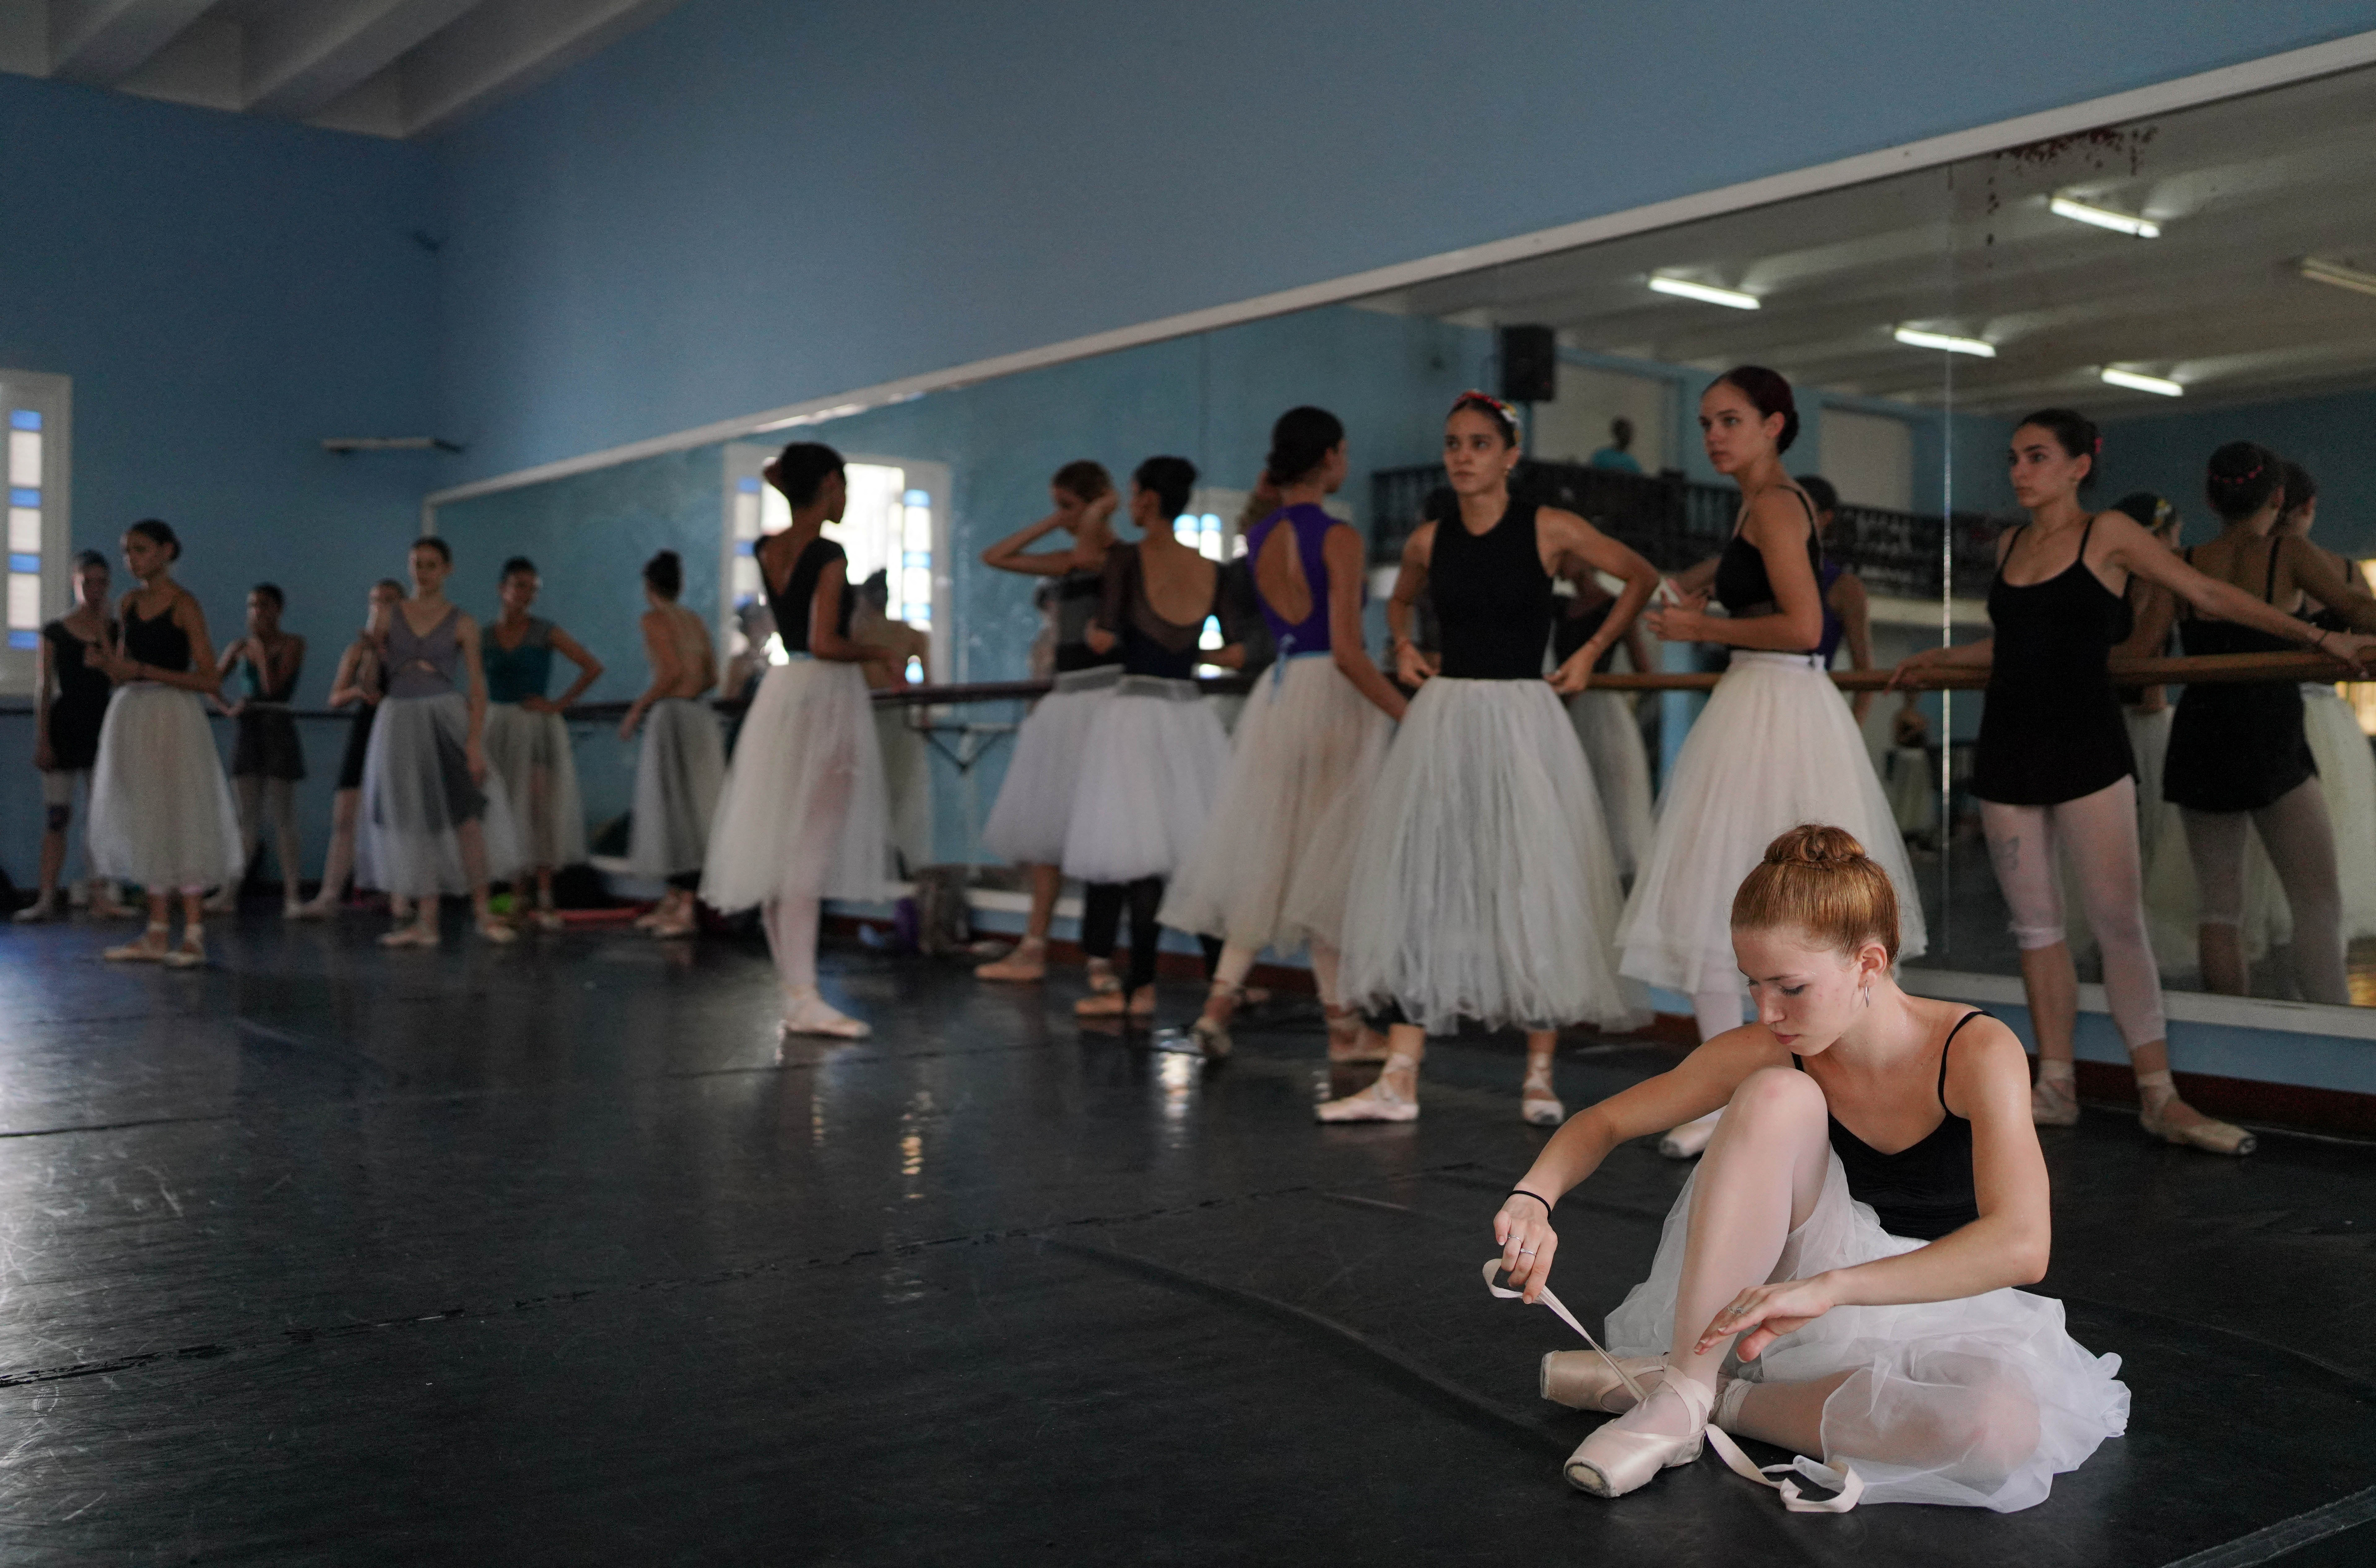 Ballet dancers get ready for a practice in Havana